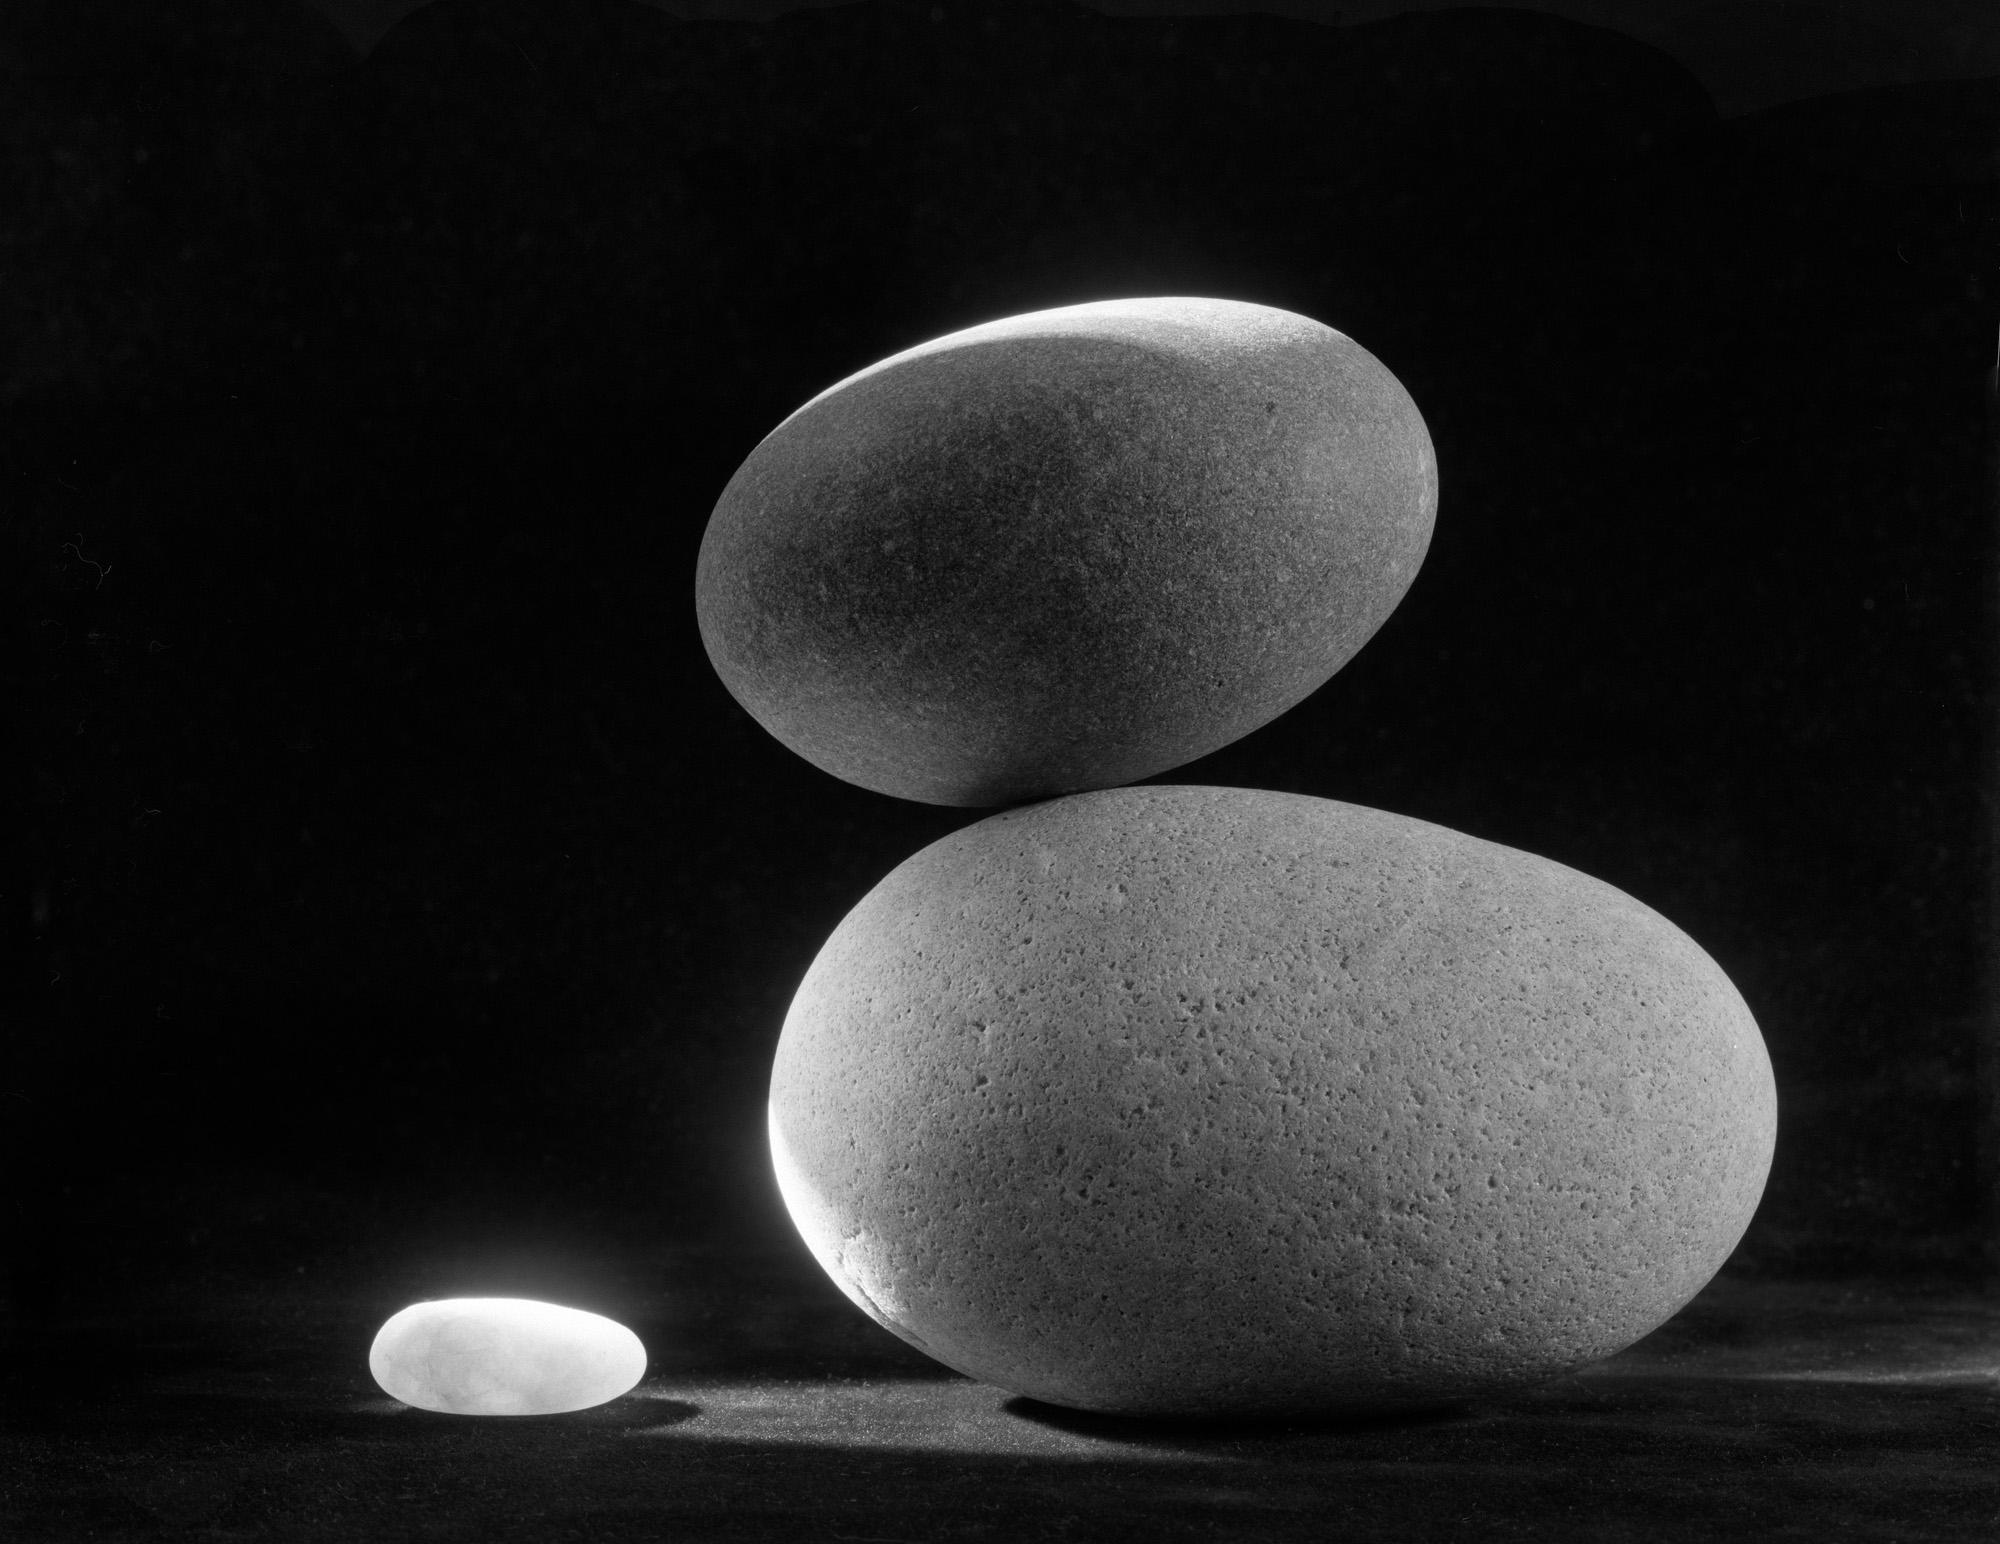 Still-Life Photograph Howard Lewis - Photographie de nature morte en noir et blanc à édition limitée "Water Stones #18" 20 x 24